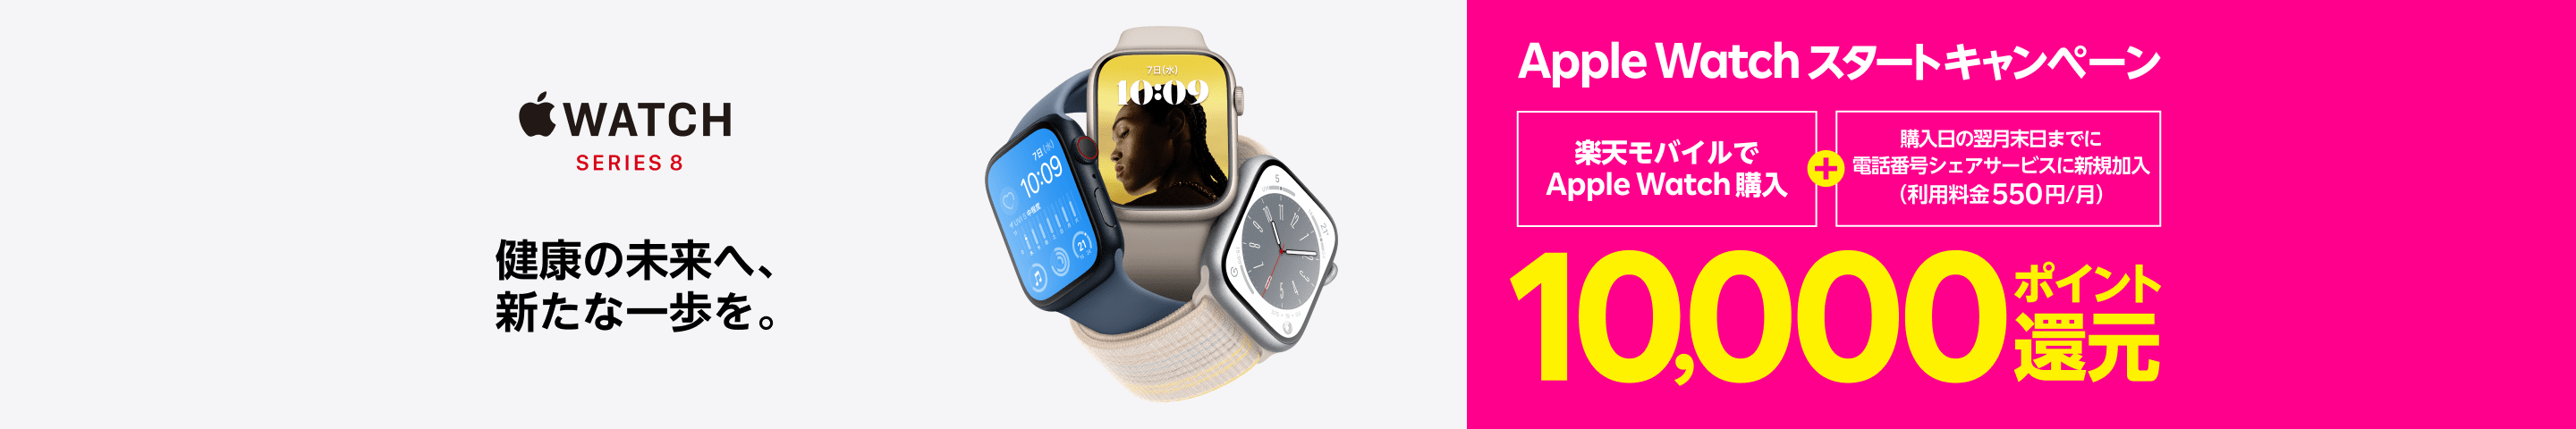 Apple Watchスタートキャンペーン Apple Watchを購入 + 電話番号シェアサービス新規加入で※1 10,000ポイント還元